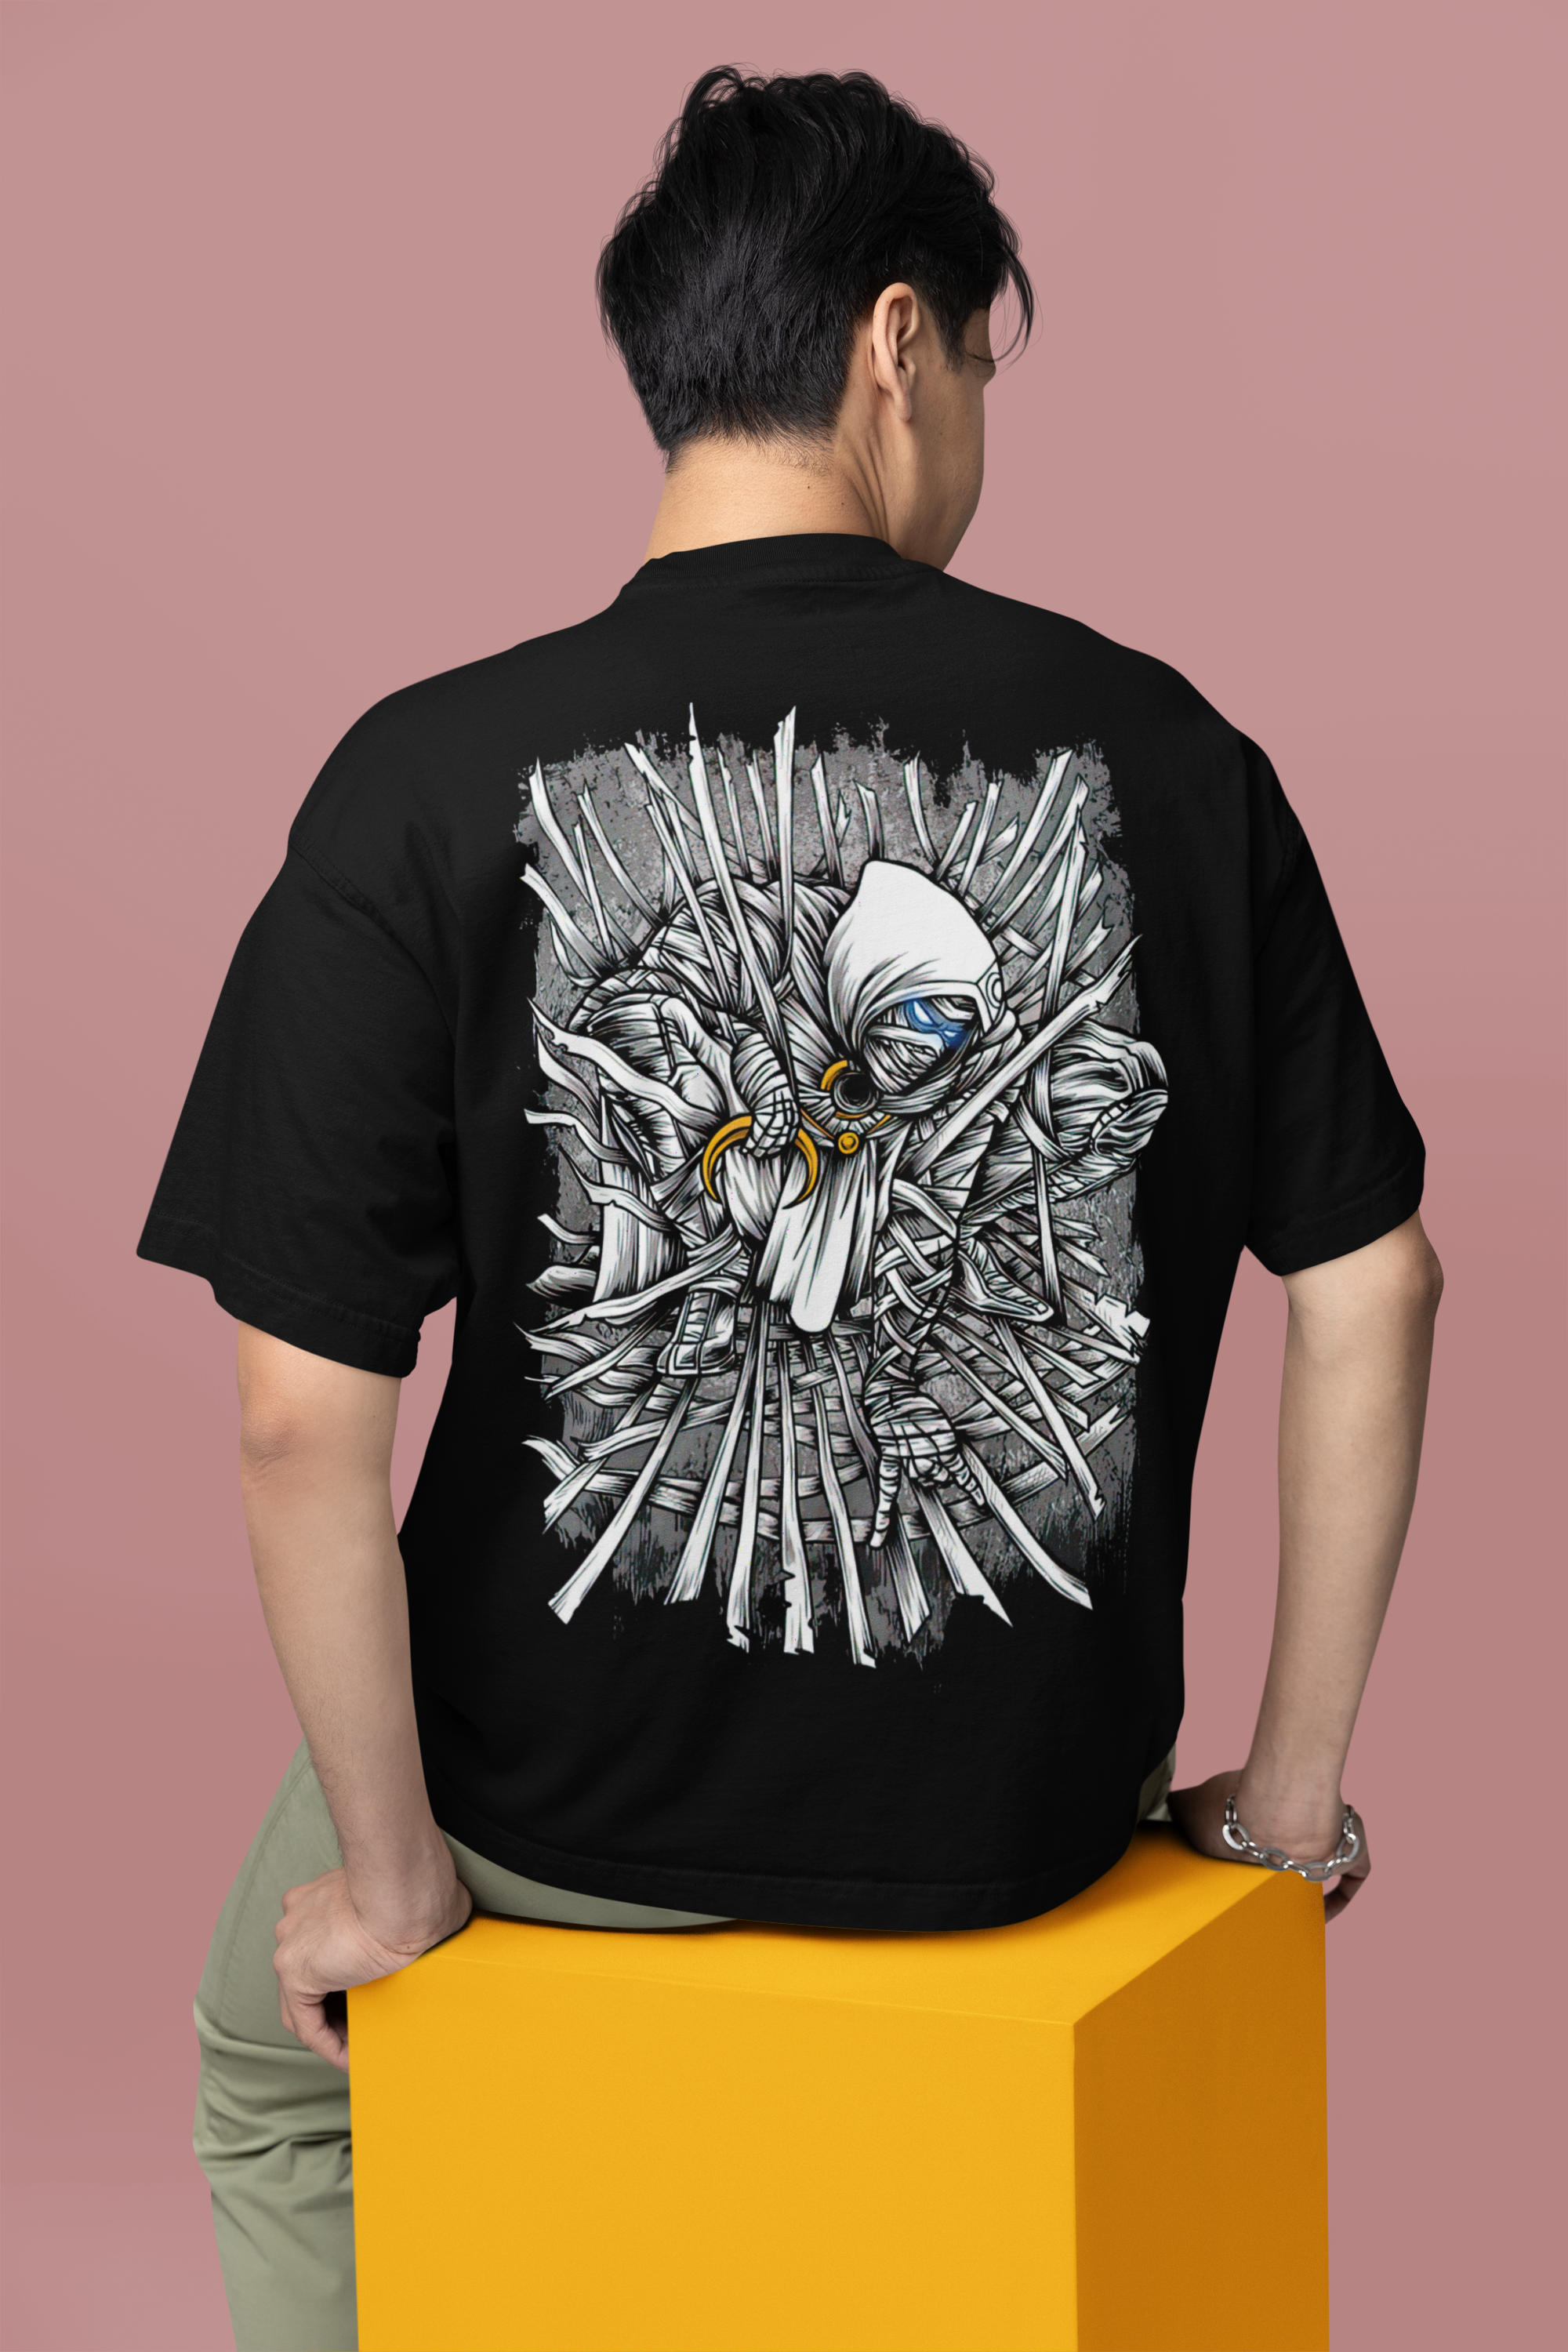 Throne of Shadows T-Shirt - SKU10234